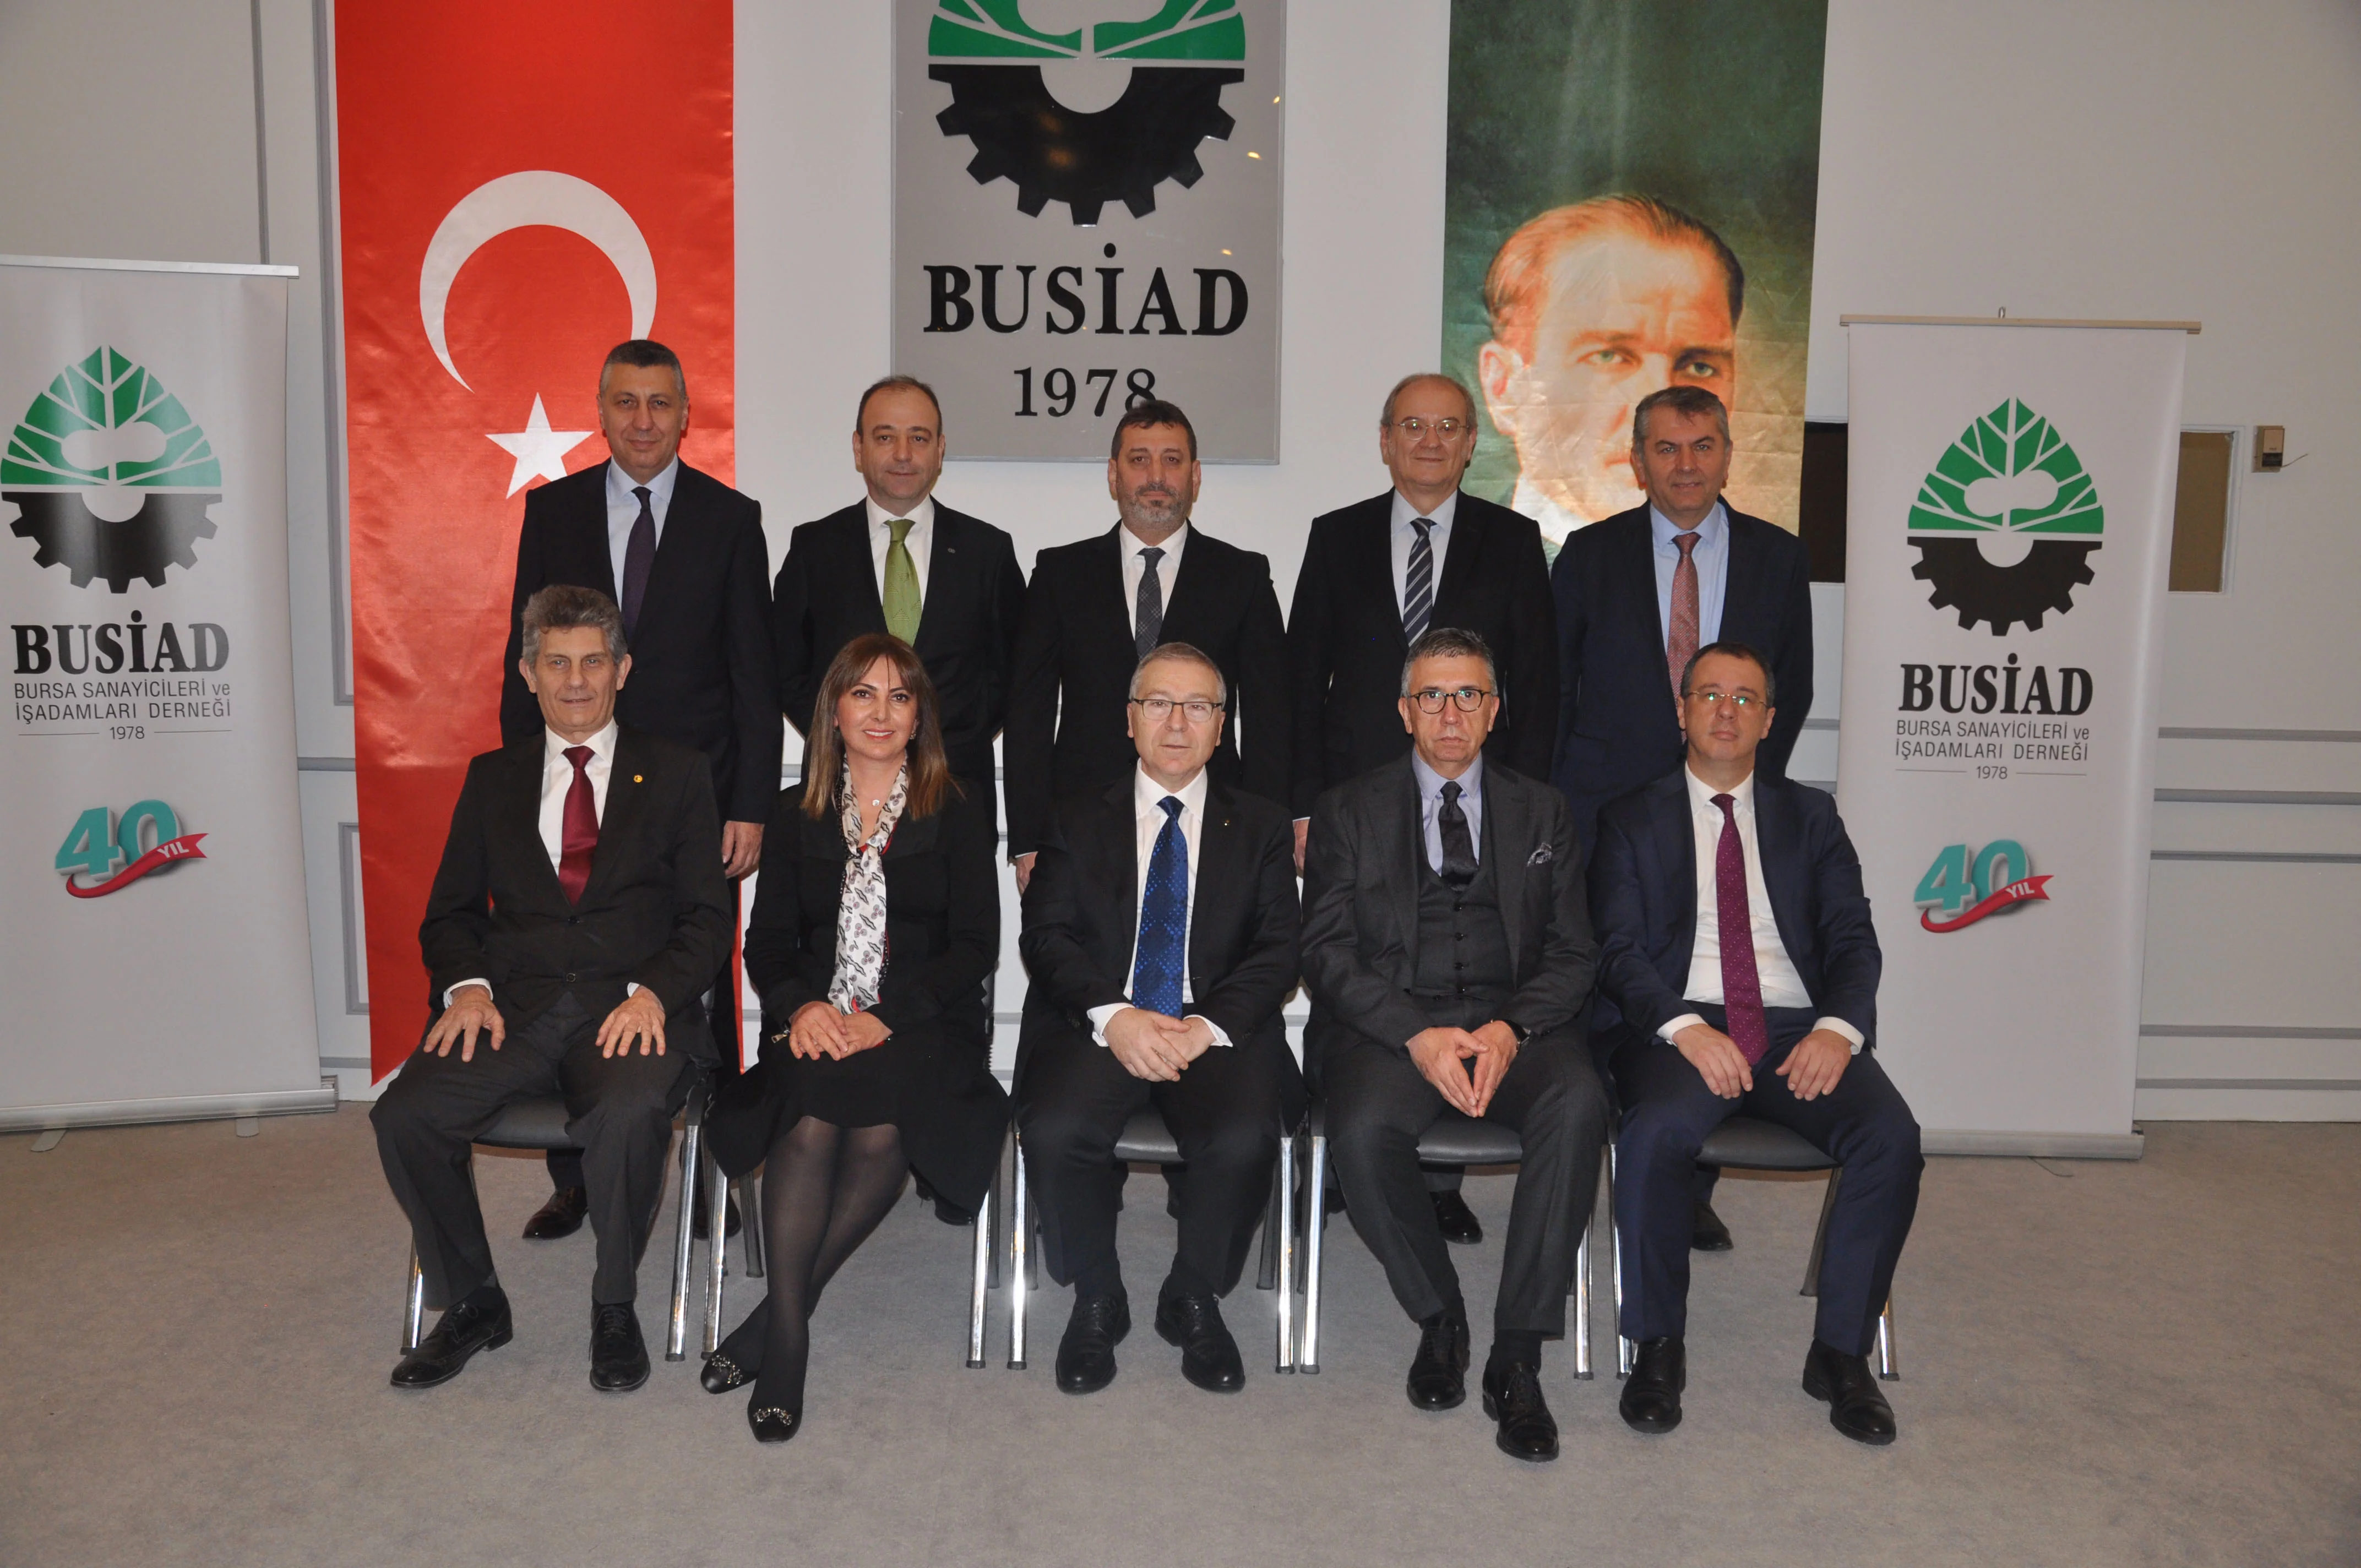 BUSİAD Basın Bülteni - BUSİAD’da Yeni Başkan Ergun Türkay